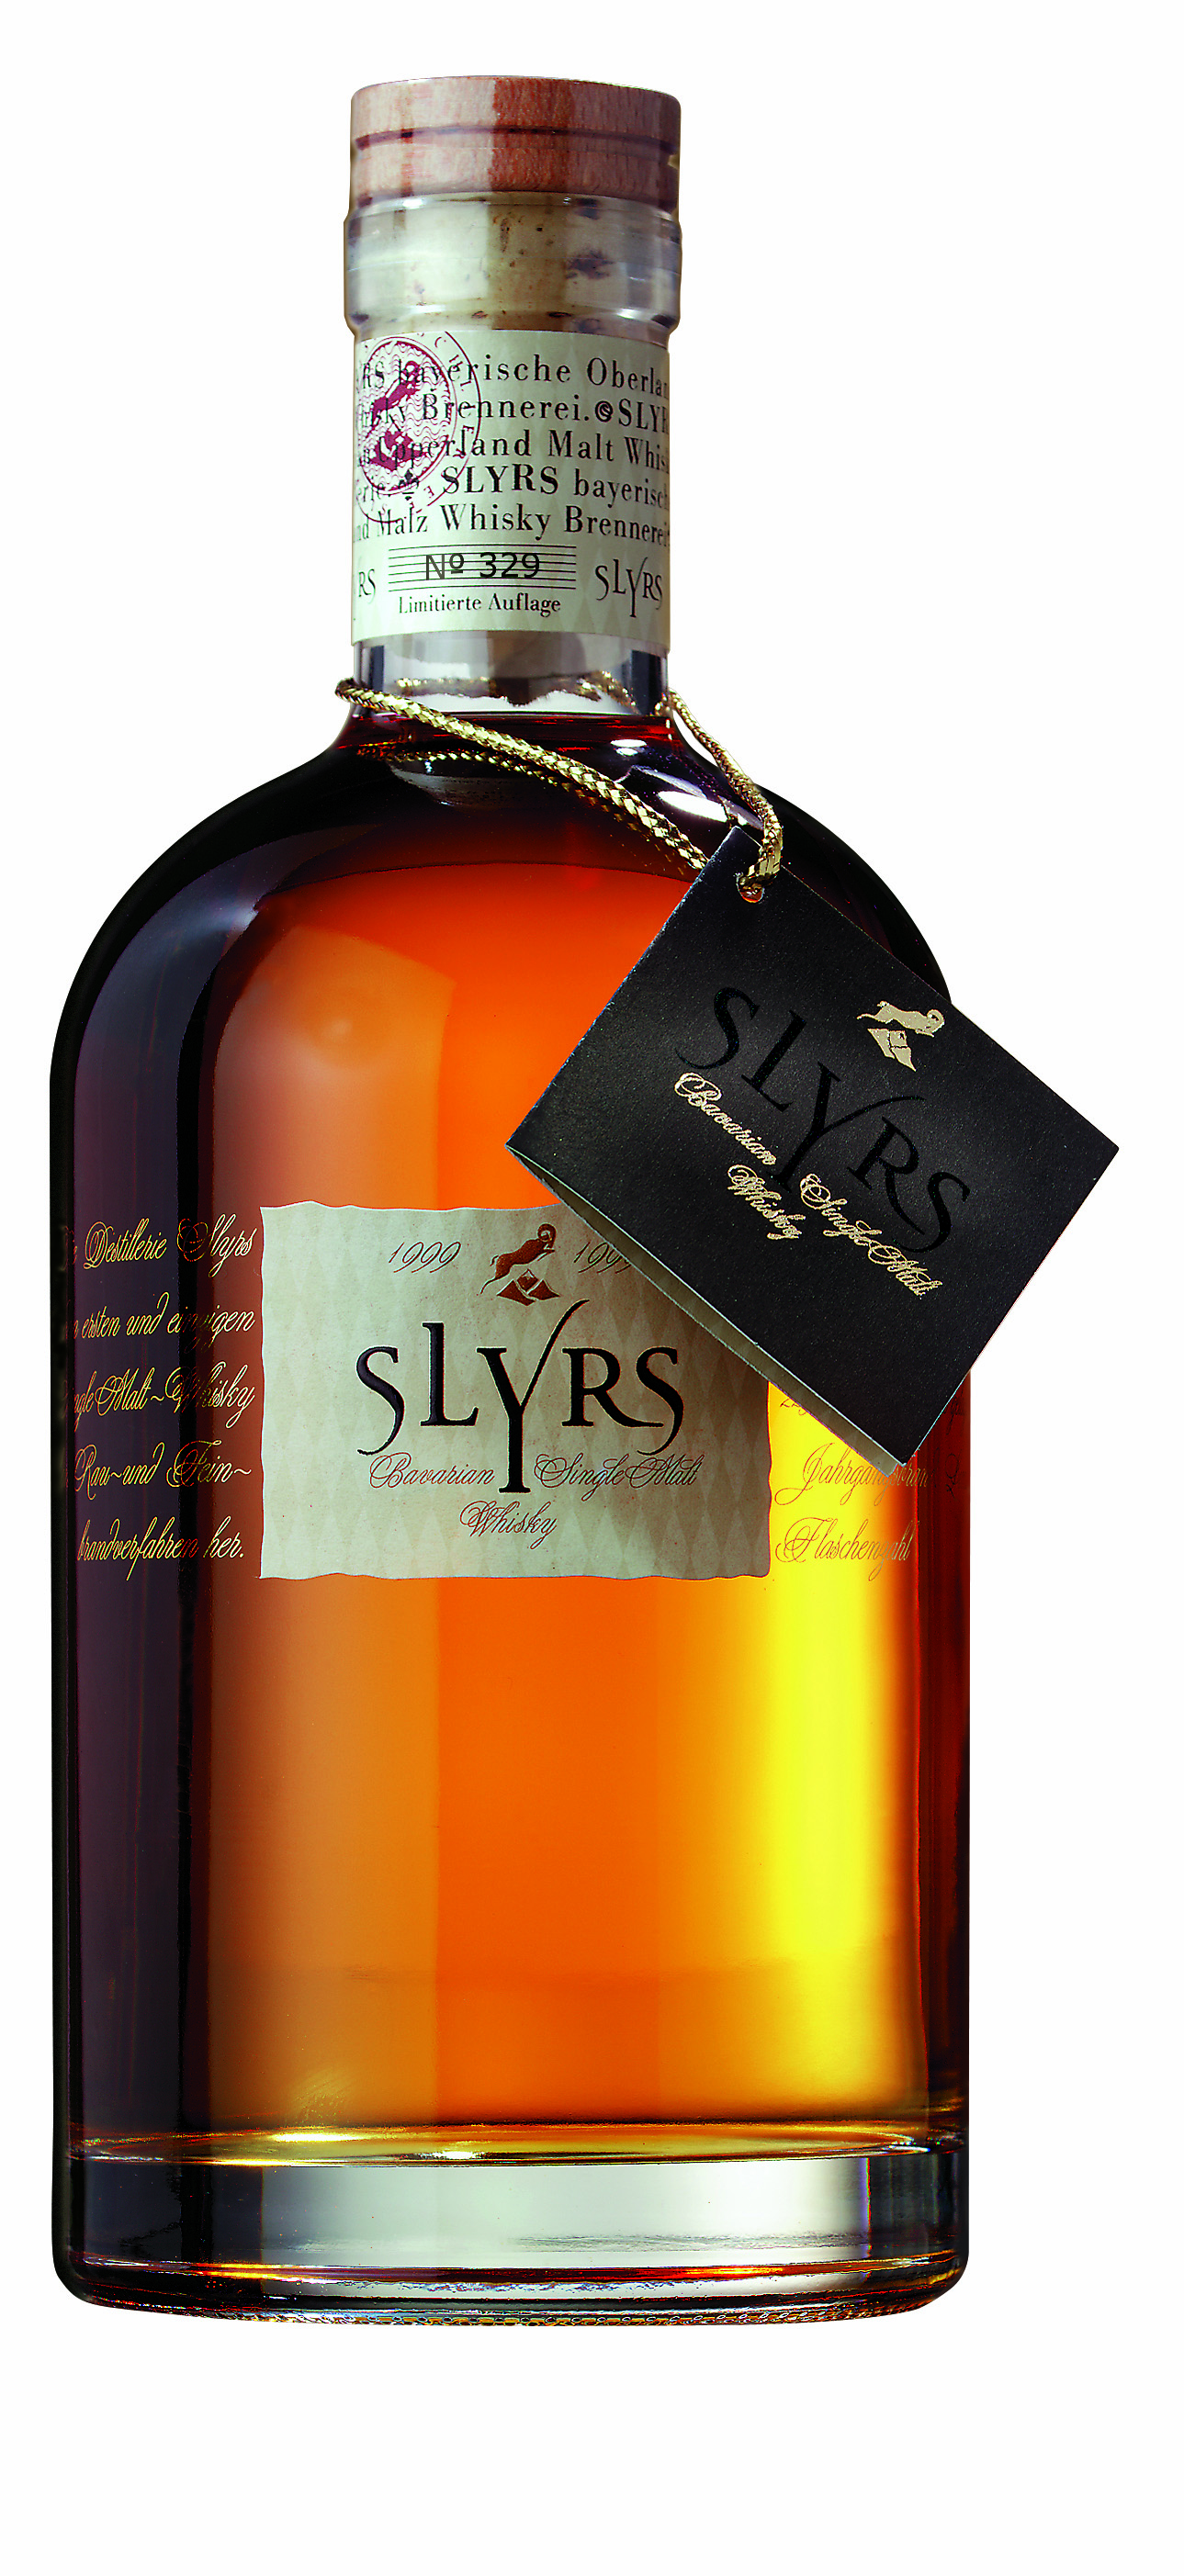 Slyrs 2009 Bavarian Single Malt Whisky